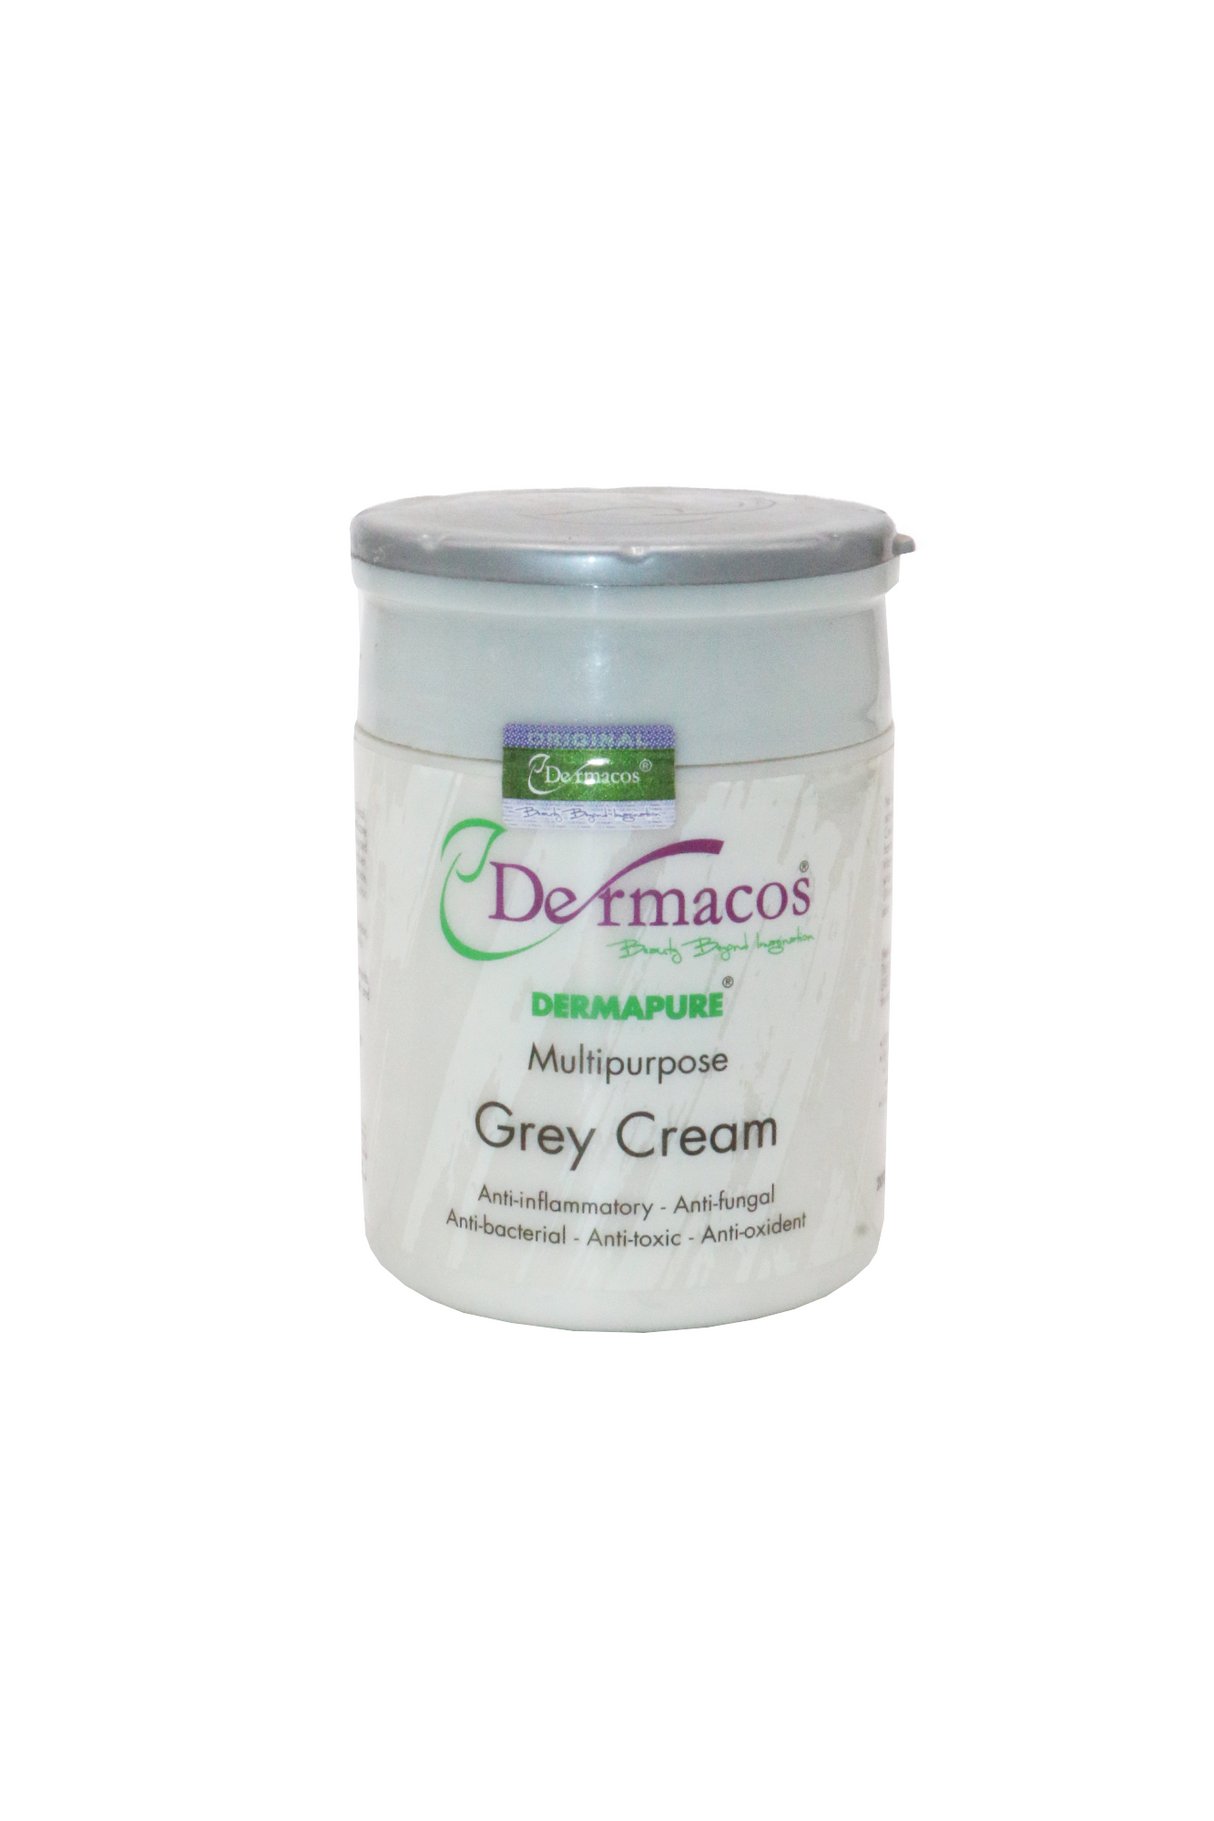 dermacos grey cream 200g